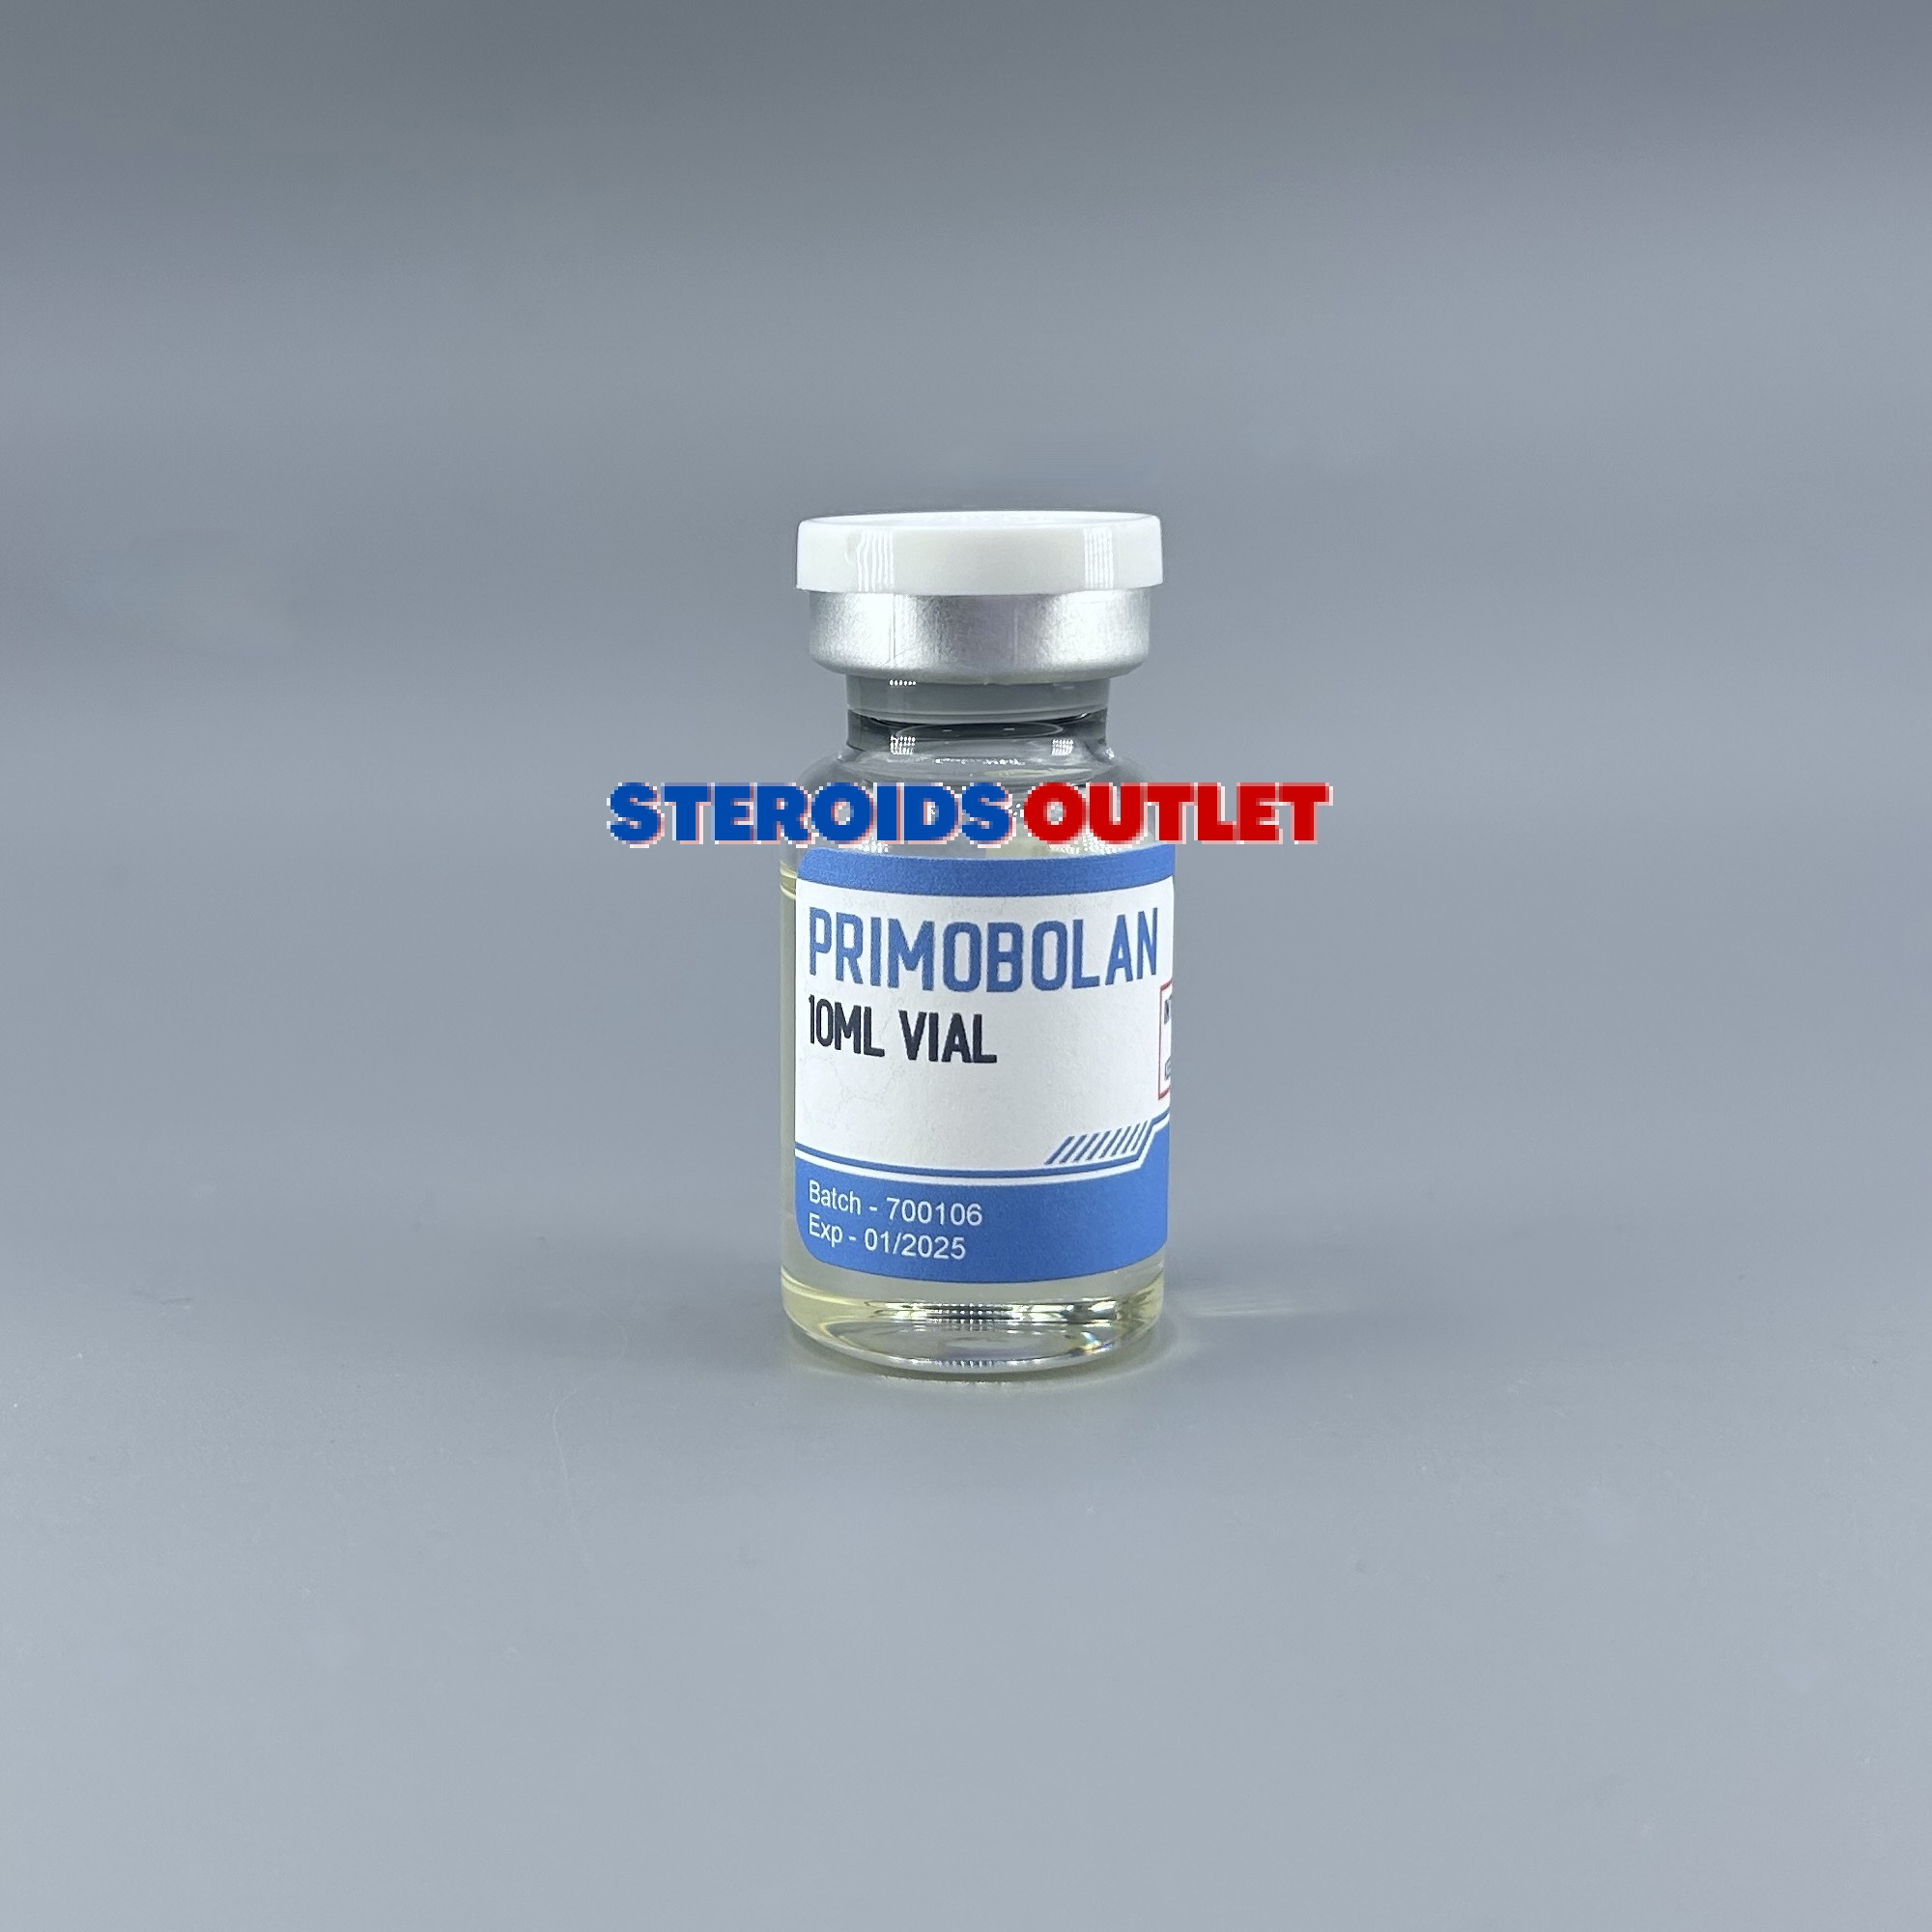 steroids-outlet.com